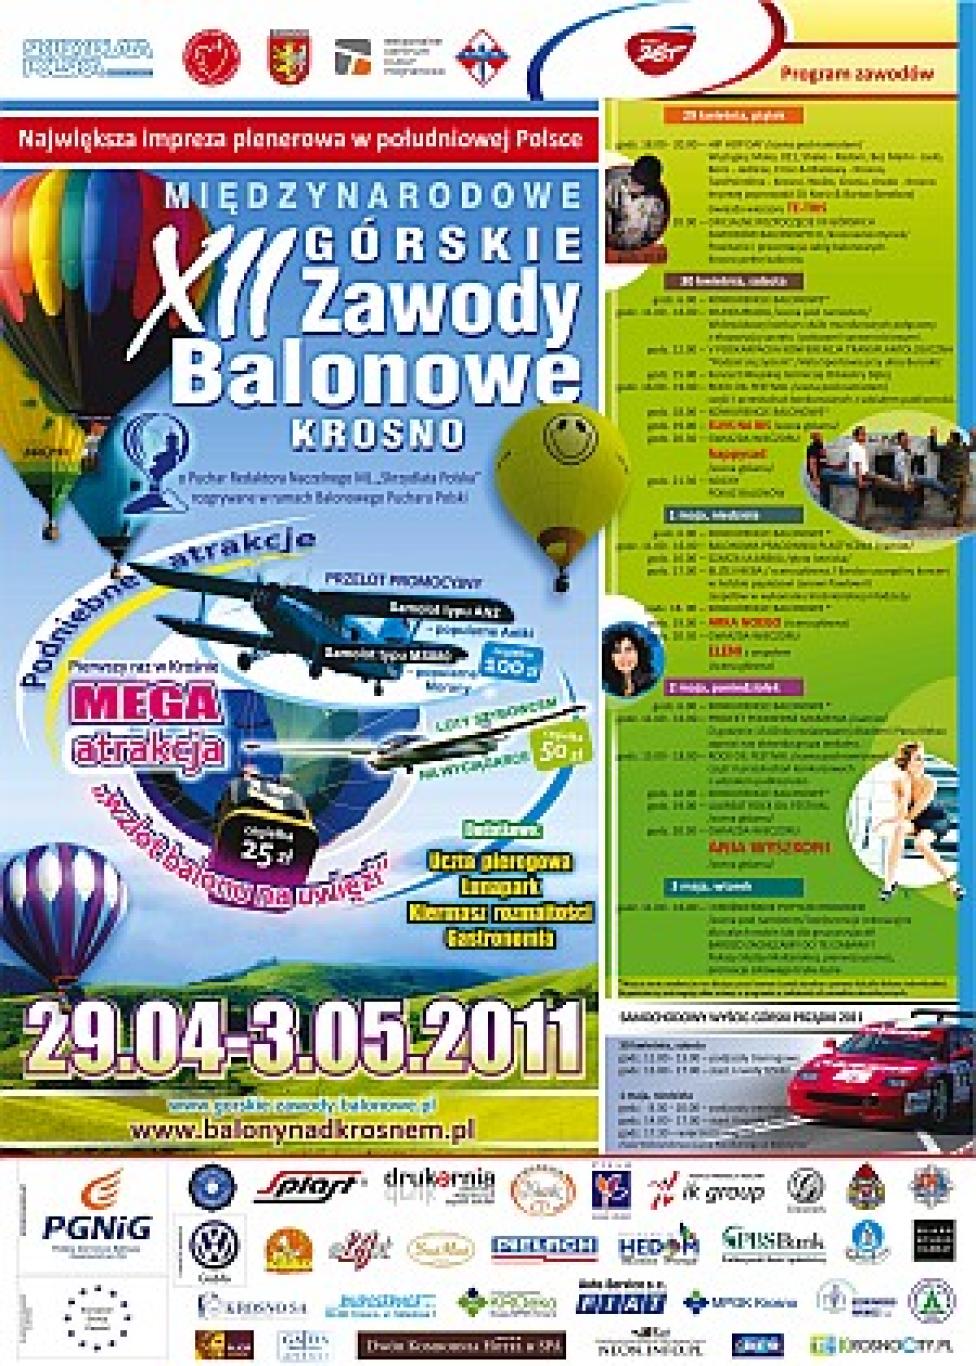 XII Górskie Zawody Balonowe w Krośnie (plakat)